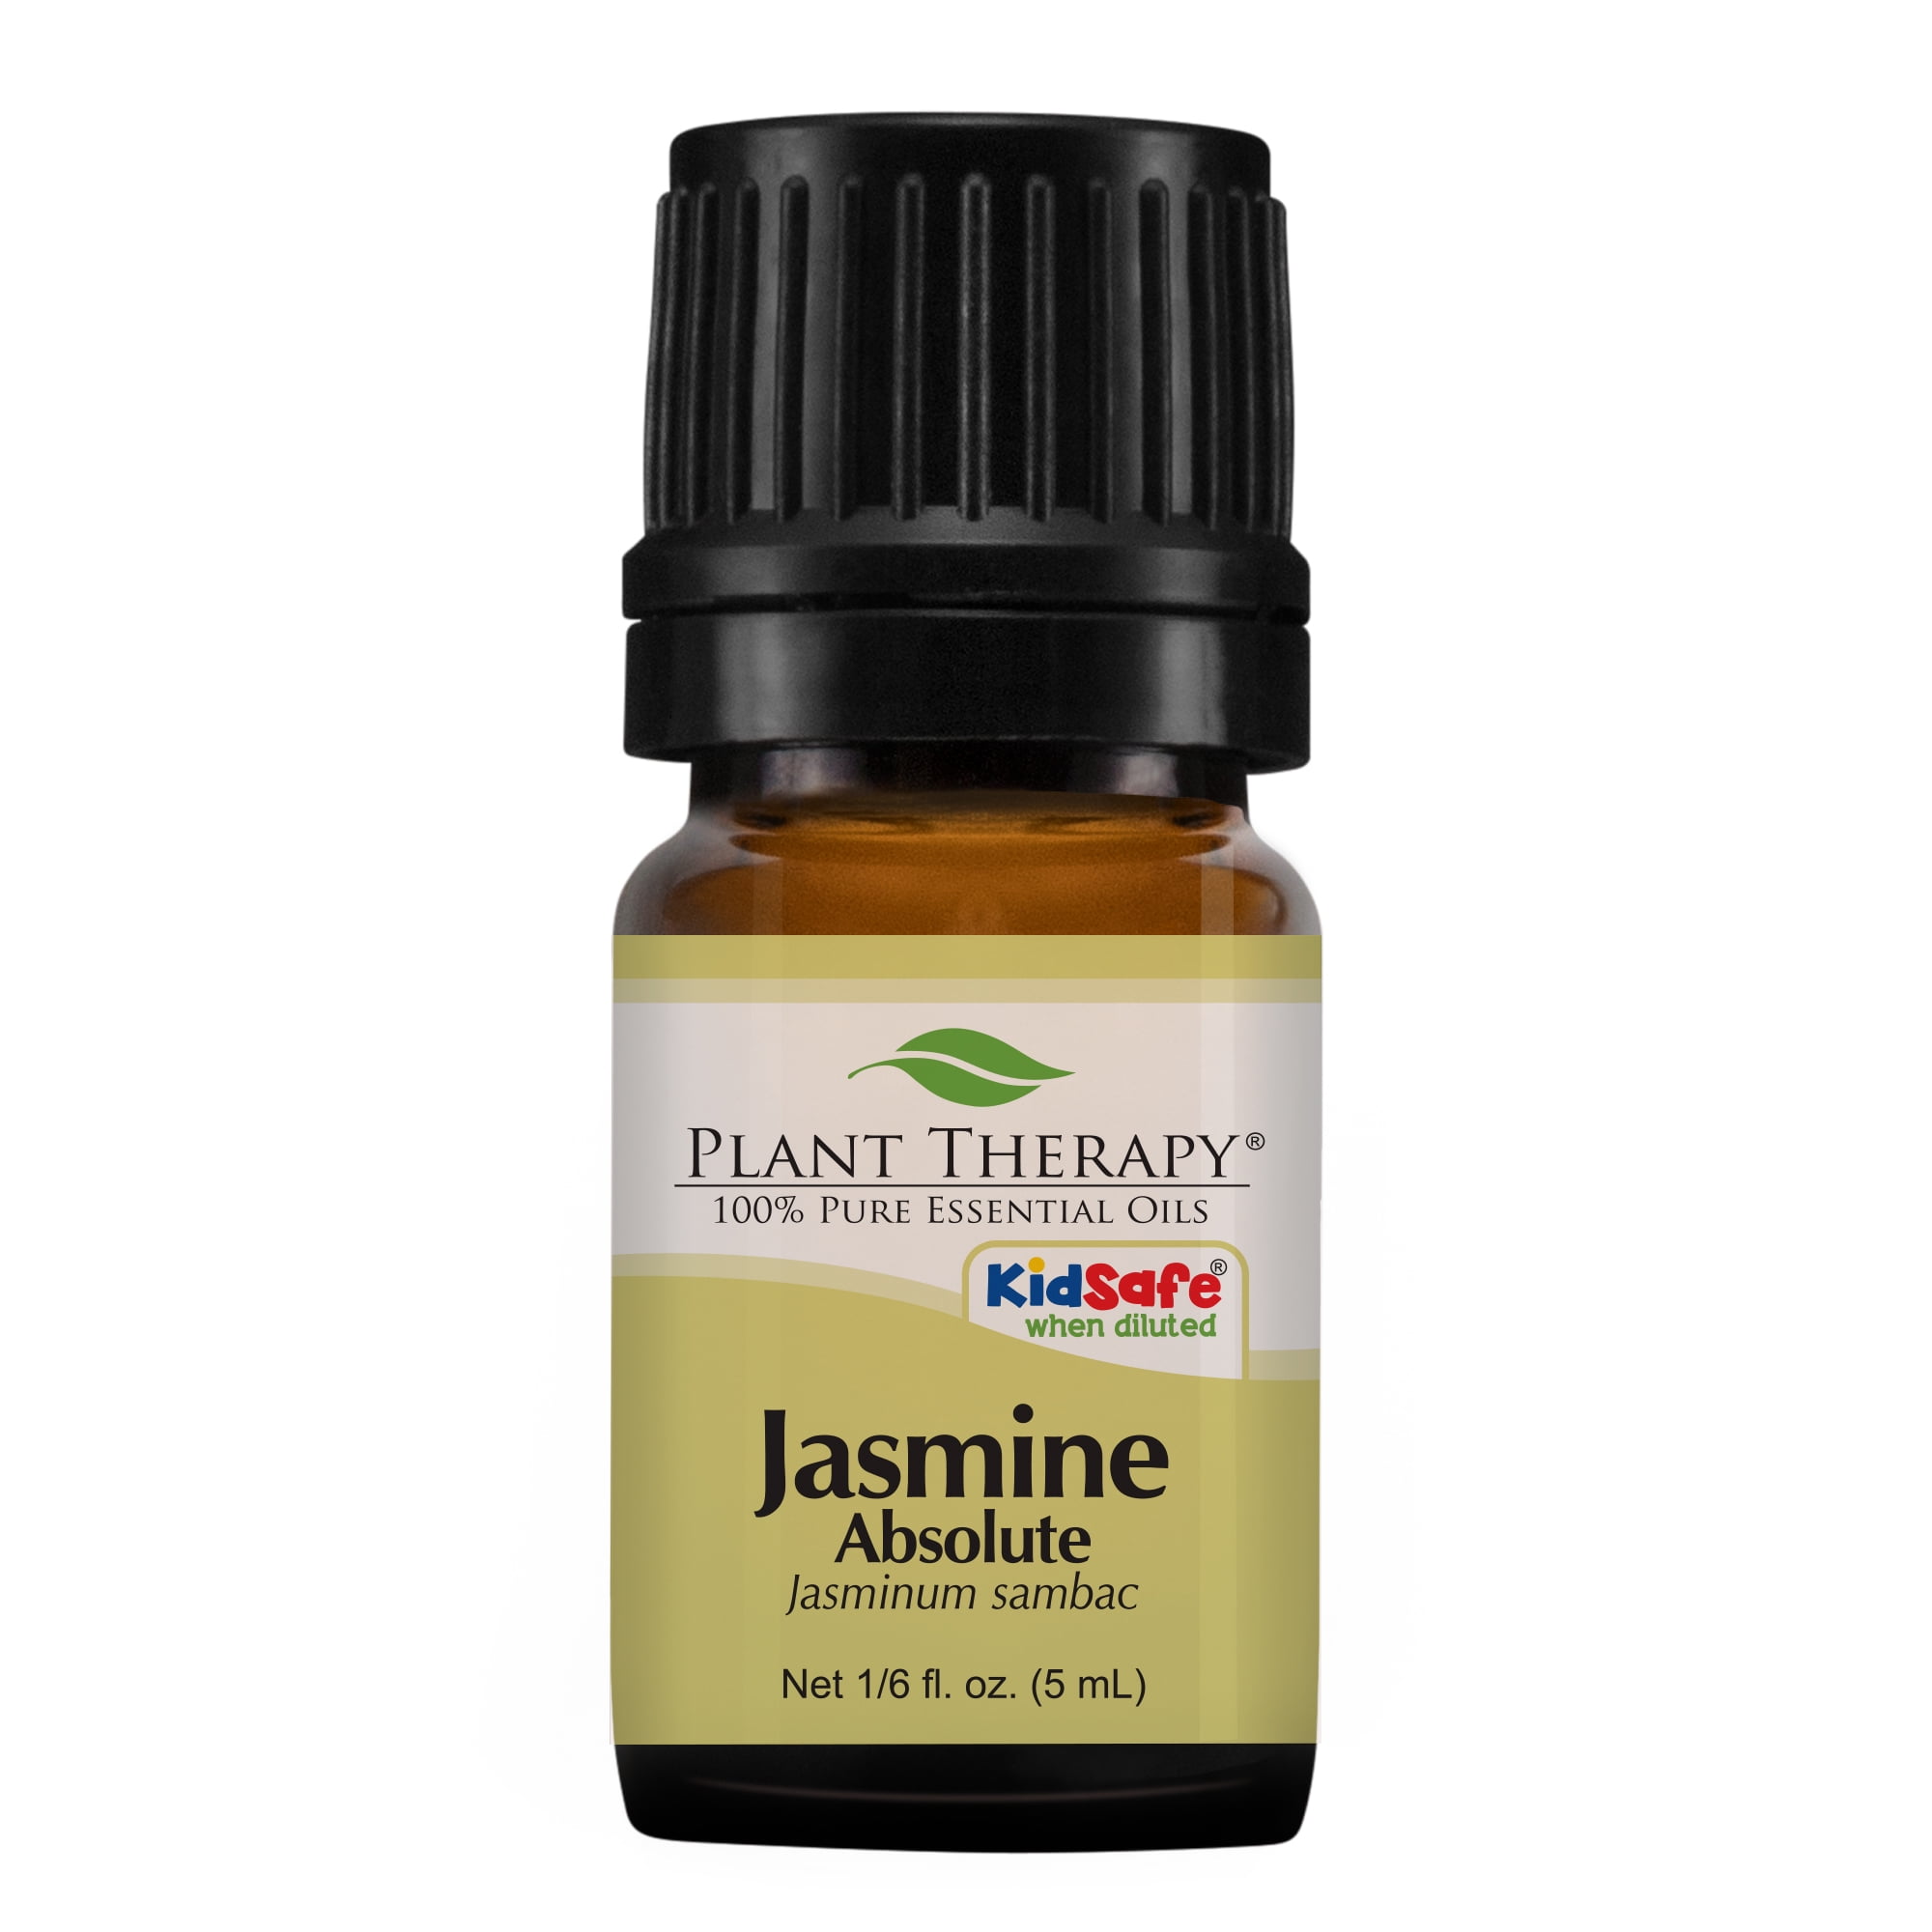 Buy Gya Labs' Jasmine Essential Oil: Elevate Your Mood